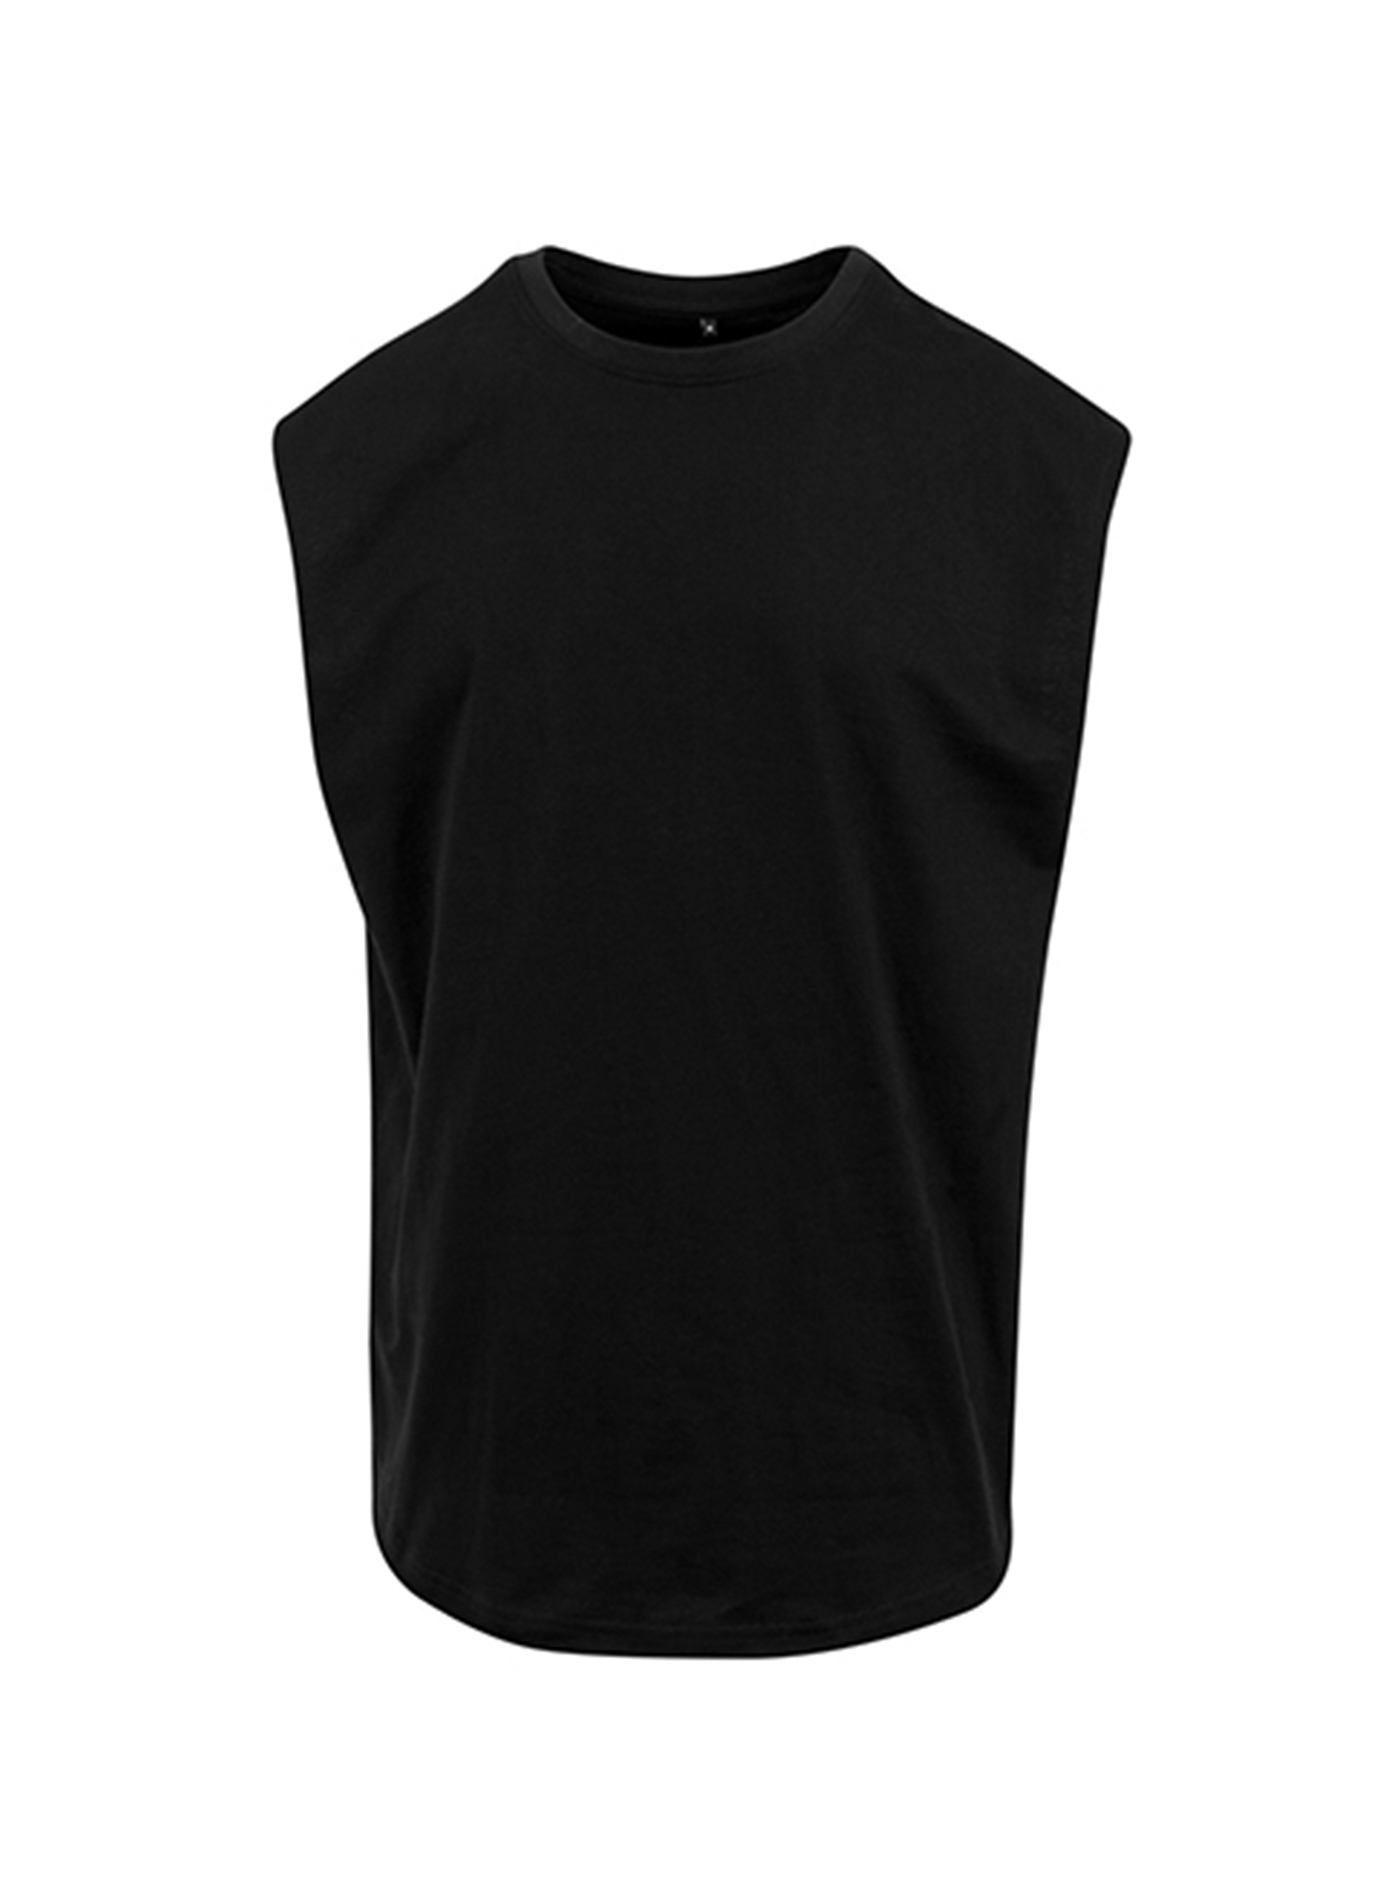 Pánské tričko bez rukávů Built your Brand - černá XL